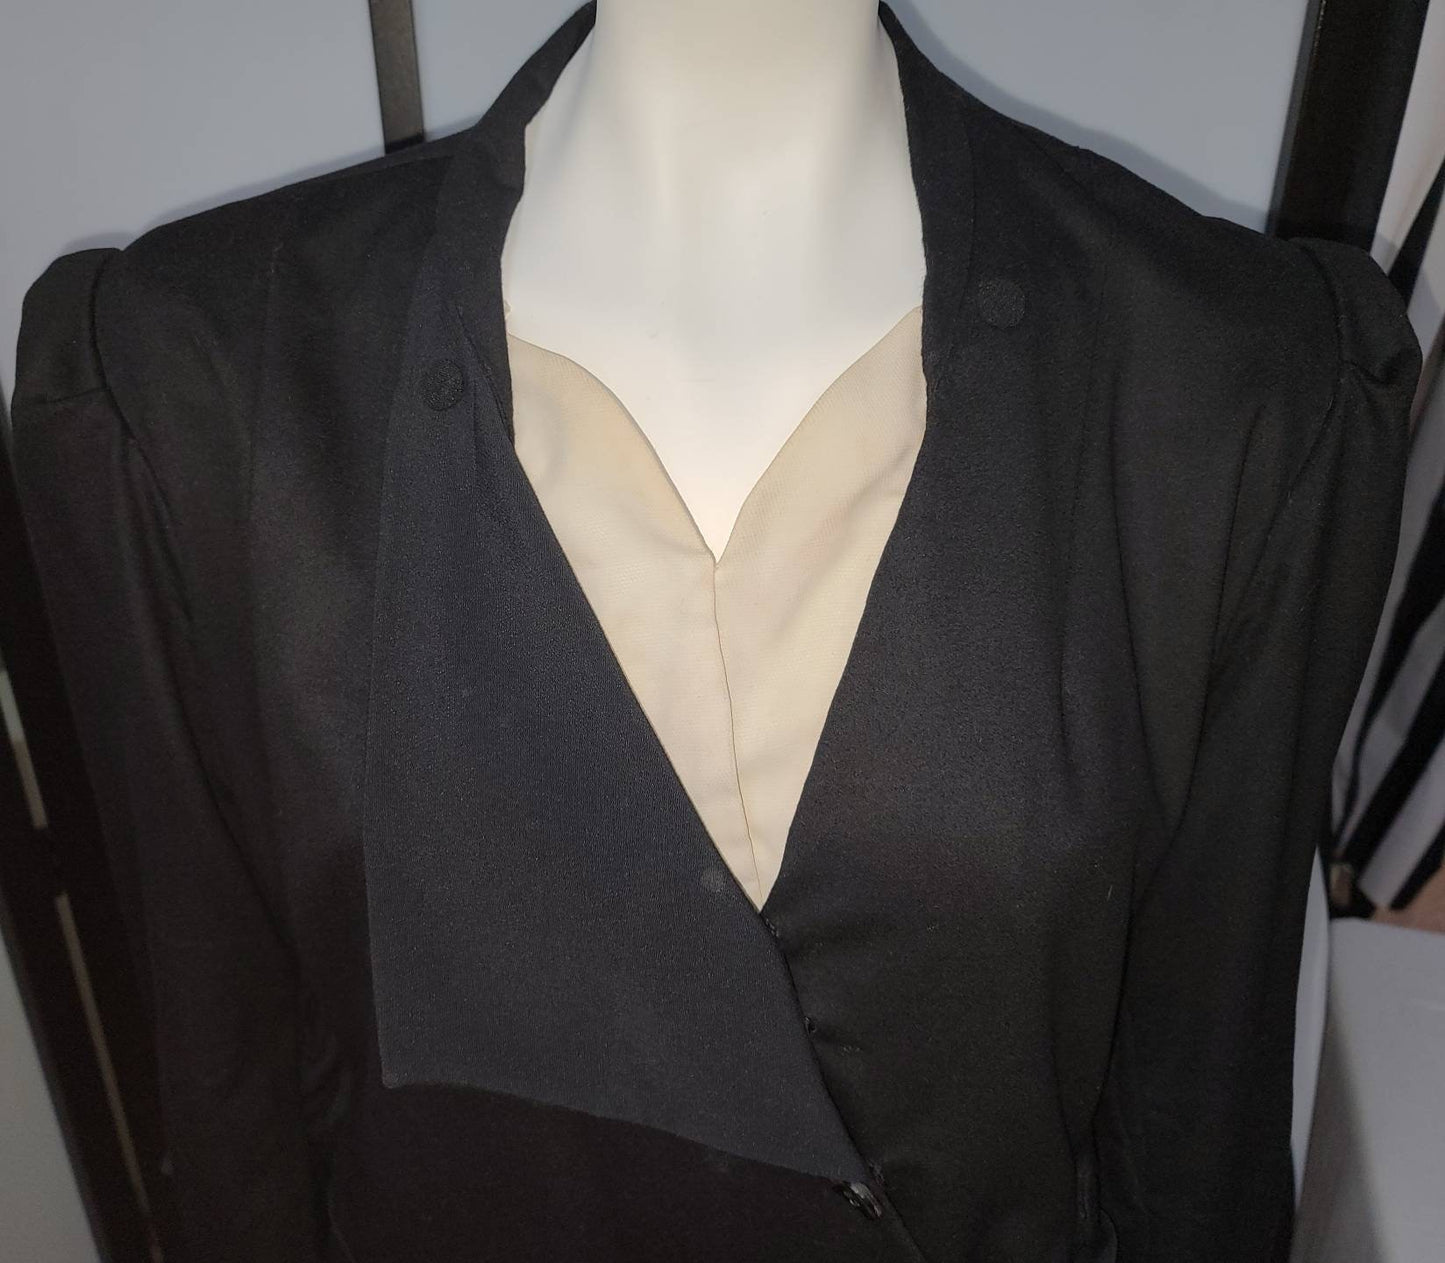 Vintage 1910s 20s Dress Black Coat Style Dress Diagonal Buttons Bows Black Glass Buttons Buckle German Art Deco Flapper XL